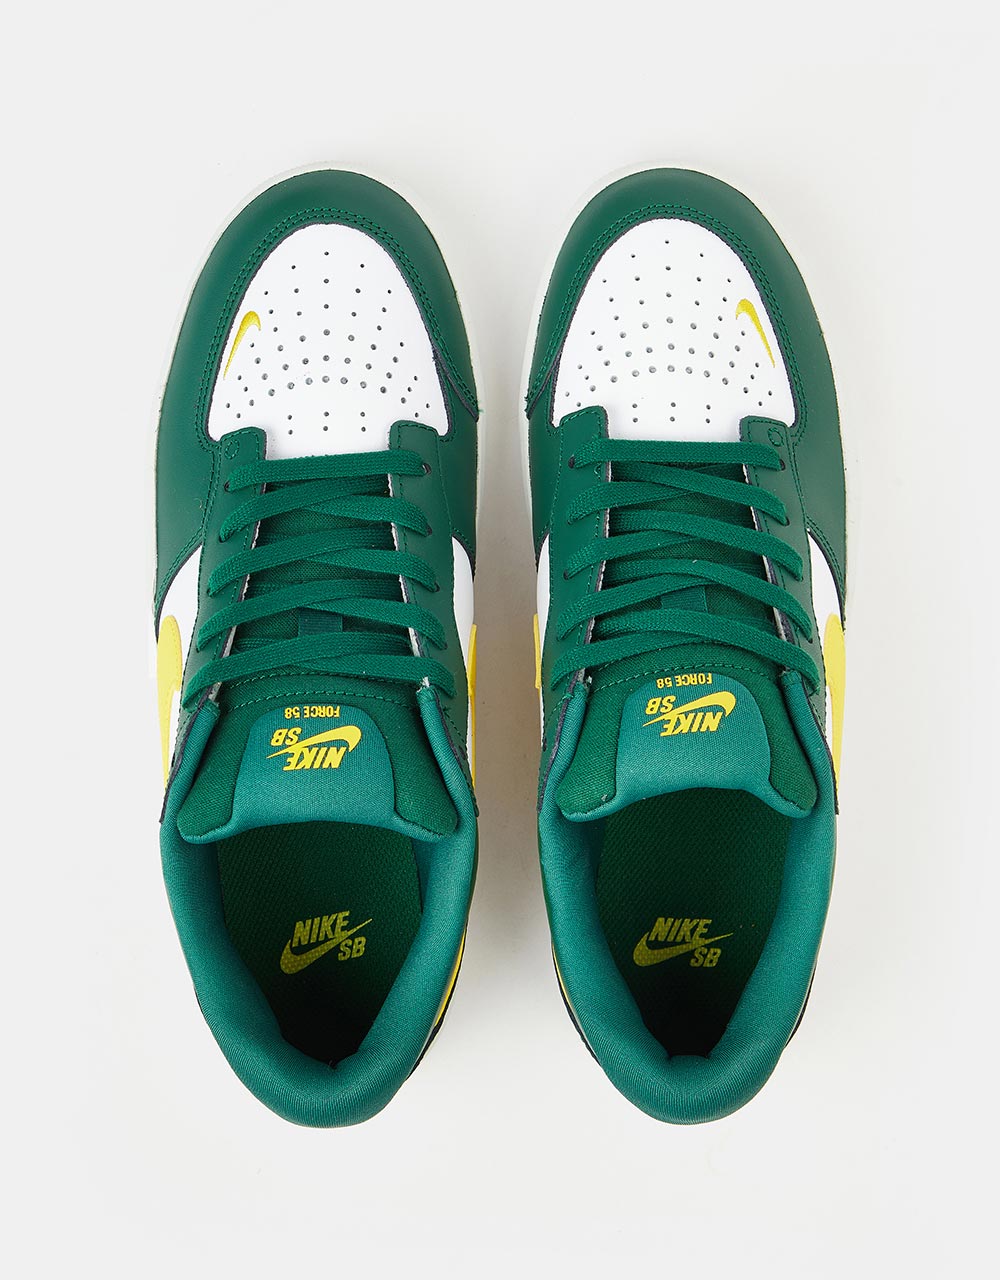 Nike SB Force 58 Premium Leather Skate Shoes - Gorge Green/Tour Yellow-White-Gorge Green-Summit White